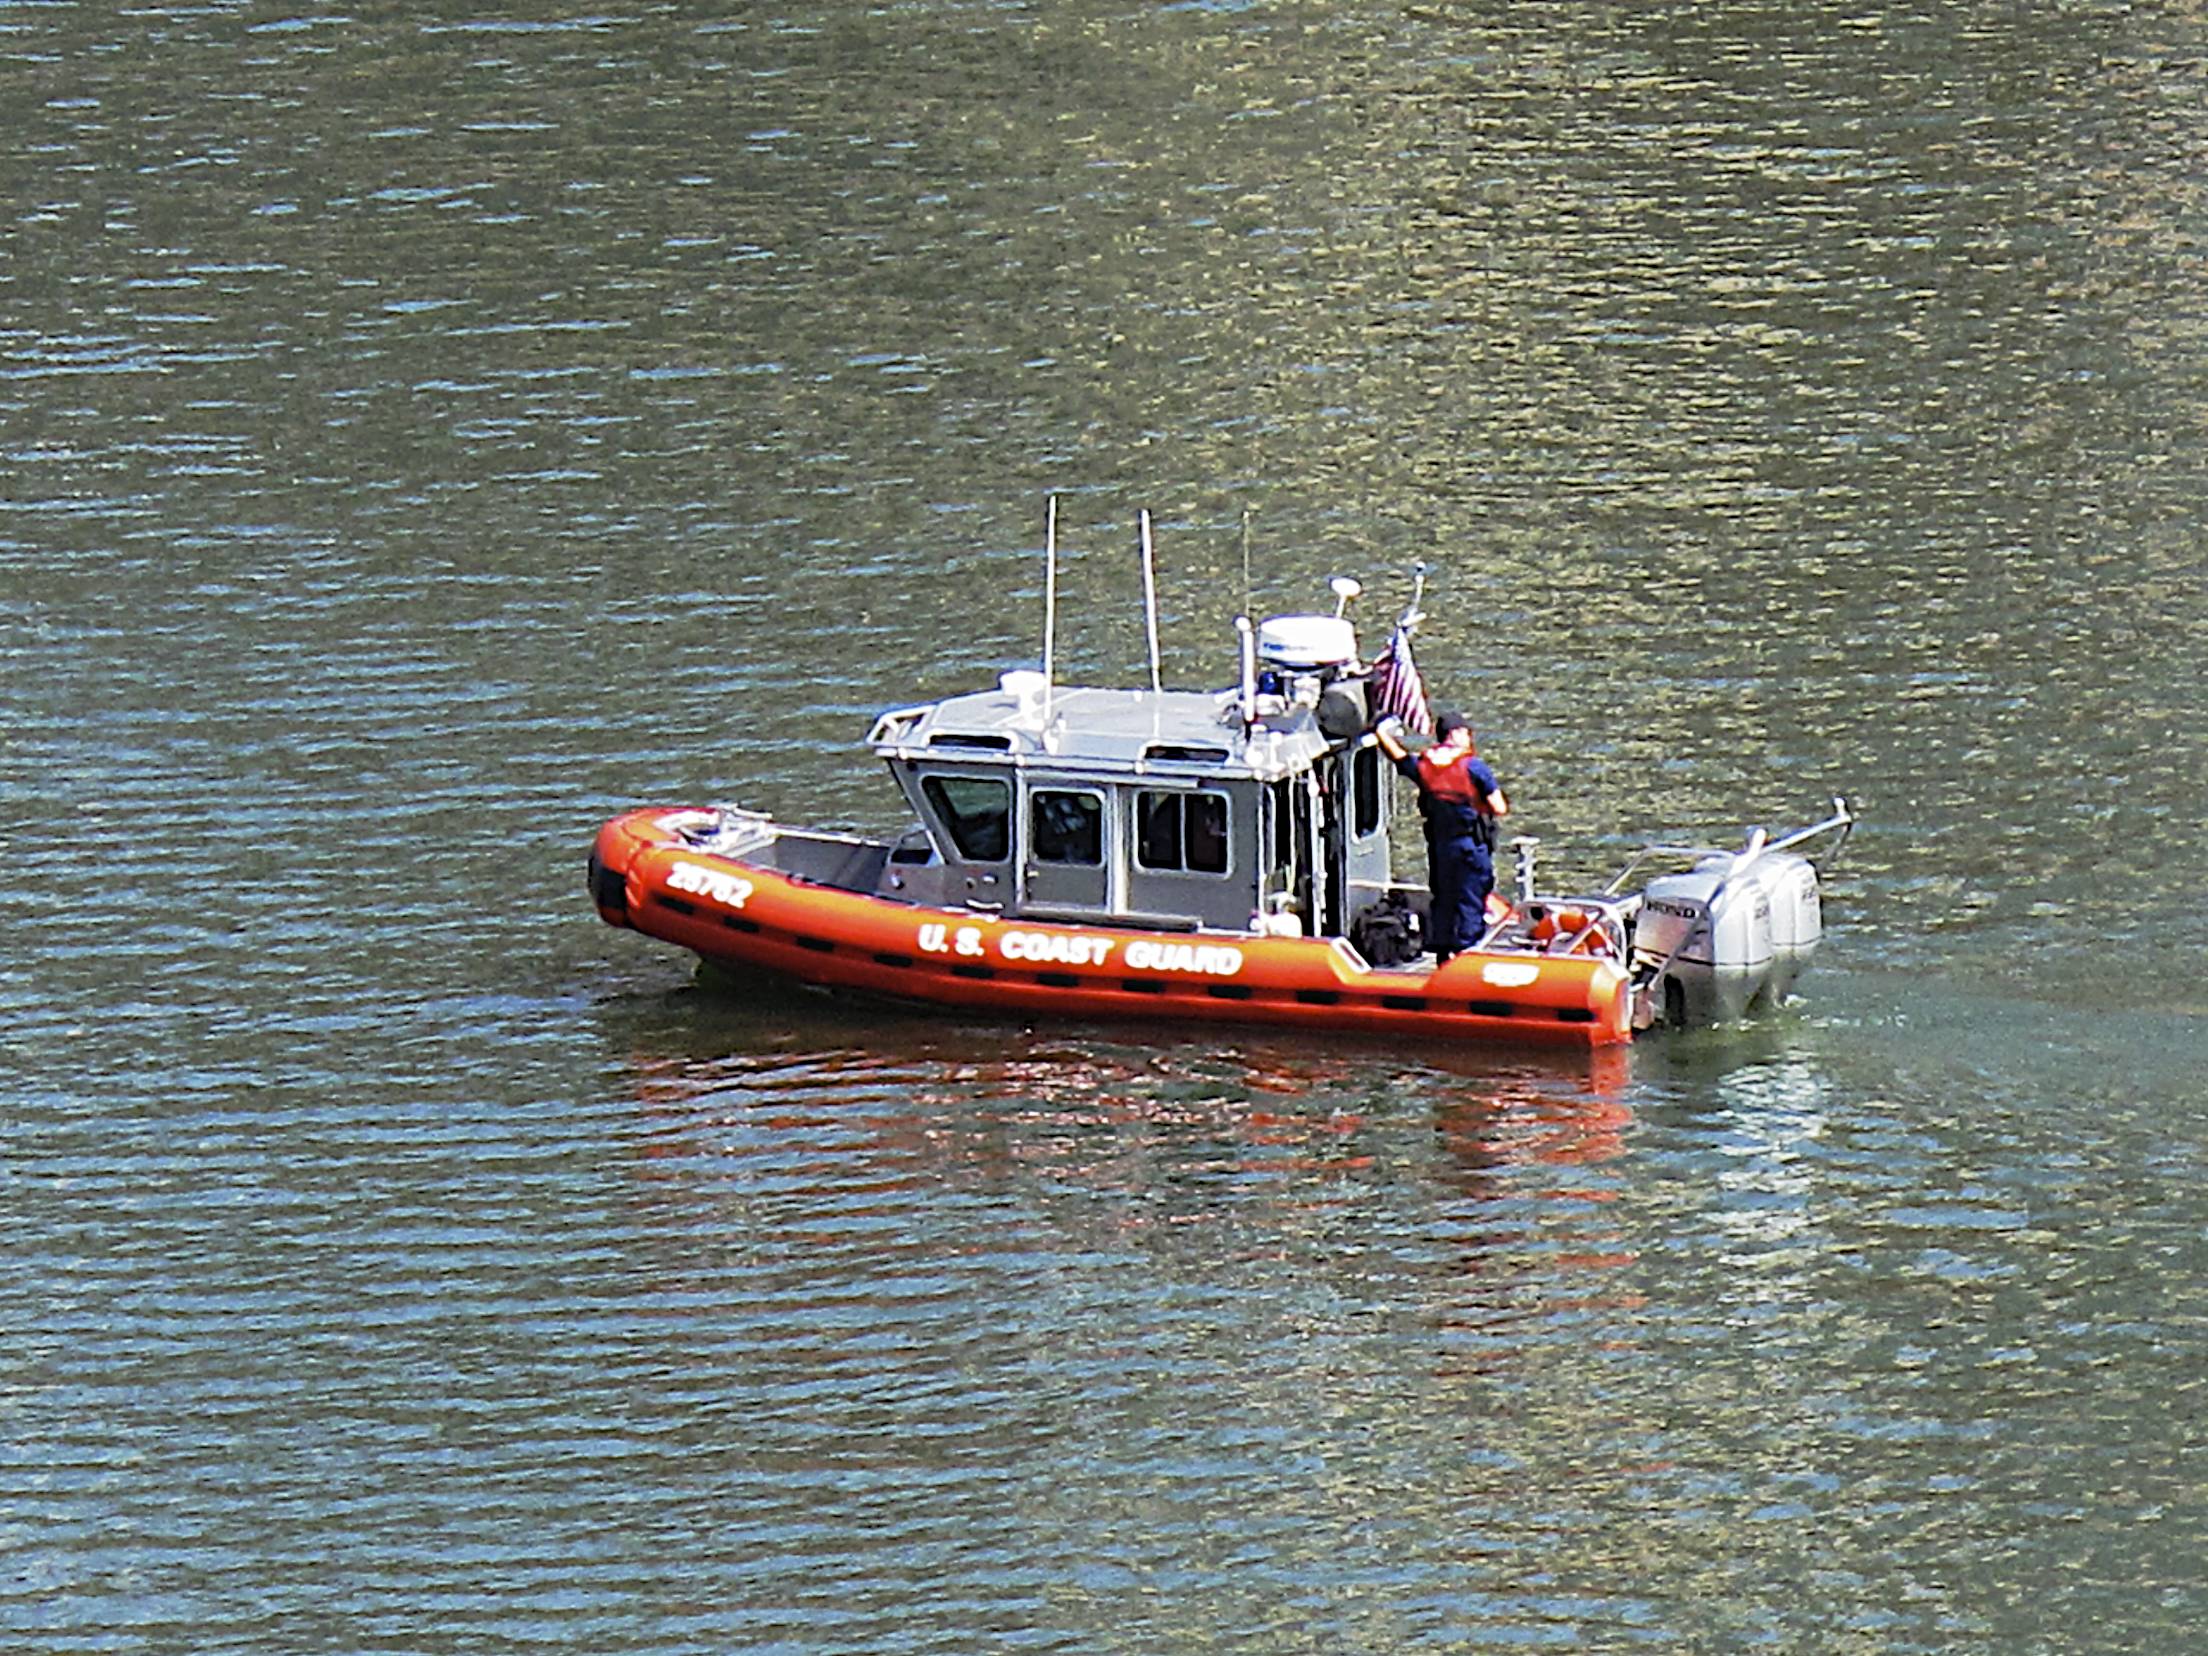 Pgh Boats: Coast Guard on the Monongahela